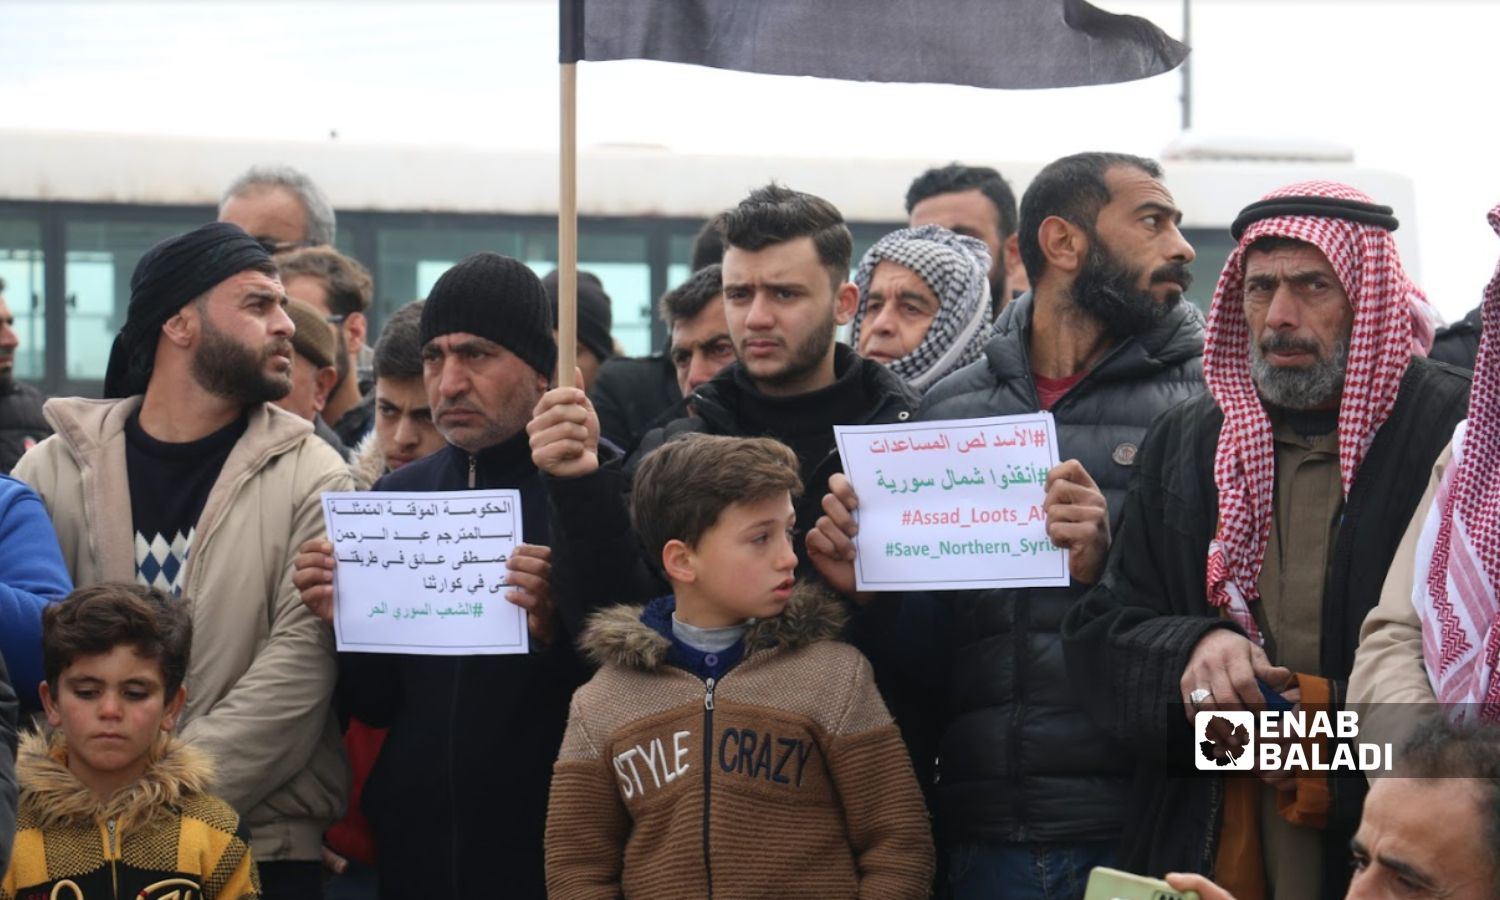 متظاهرون بريف حلب قرب معبر "باب السلامة" الحدودي مع تركيا للمطالبة بإدخال المساعدات للمتضررين من الزلزال الذي ضرب المنطقة- 10 شباط 2023 (عنب بلدي/ ديان جنباز)